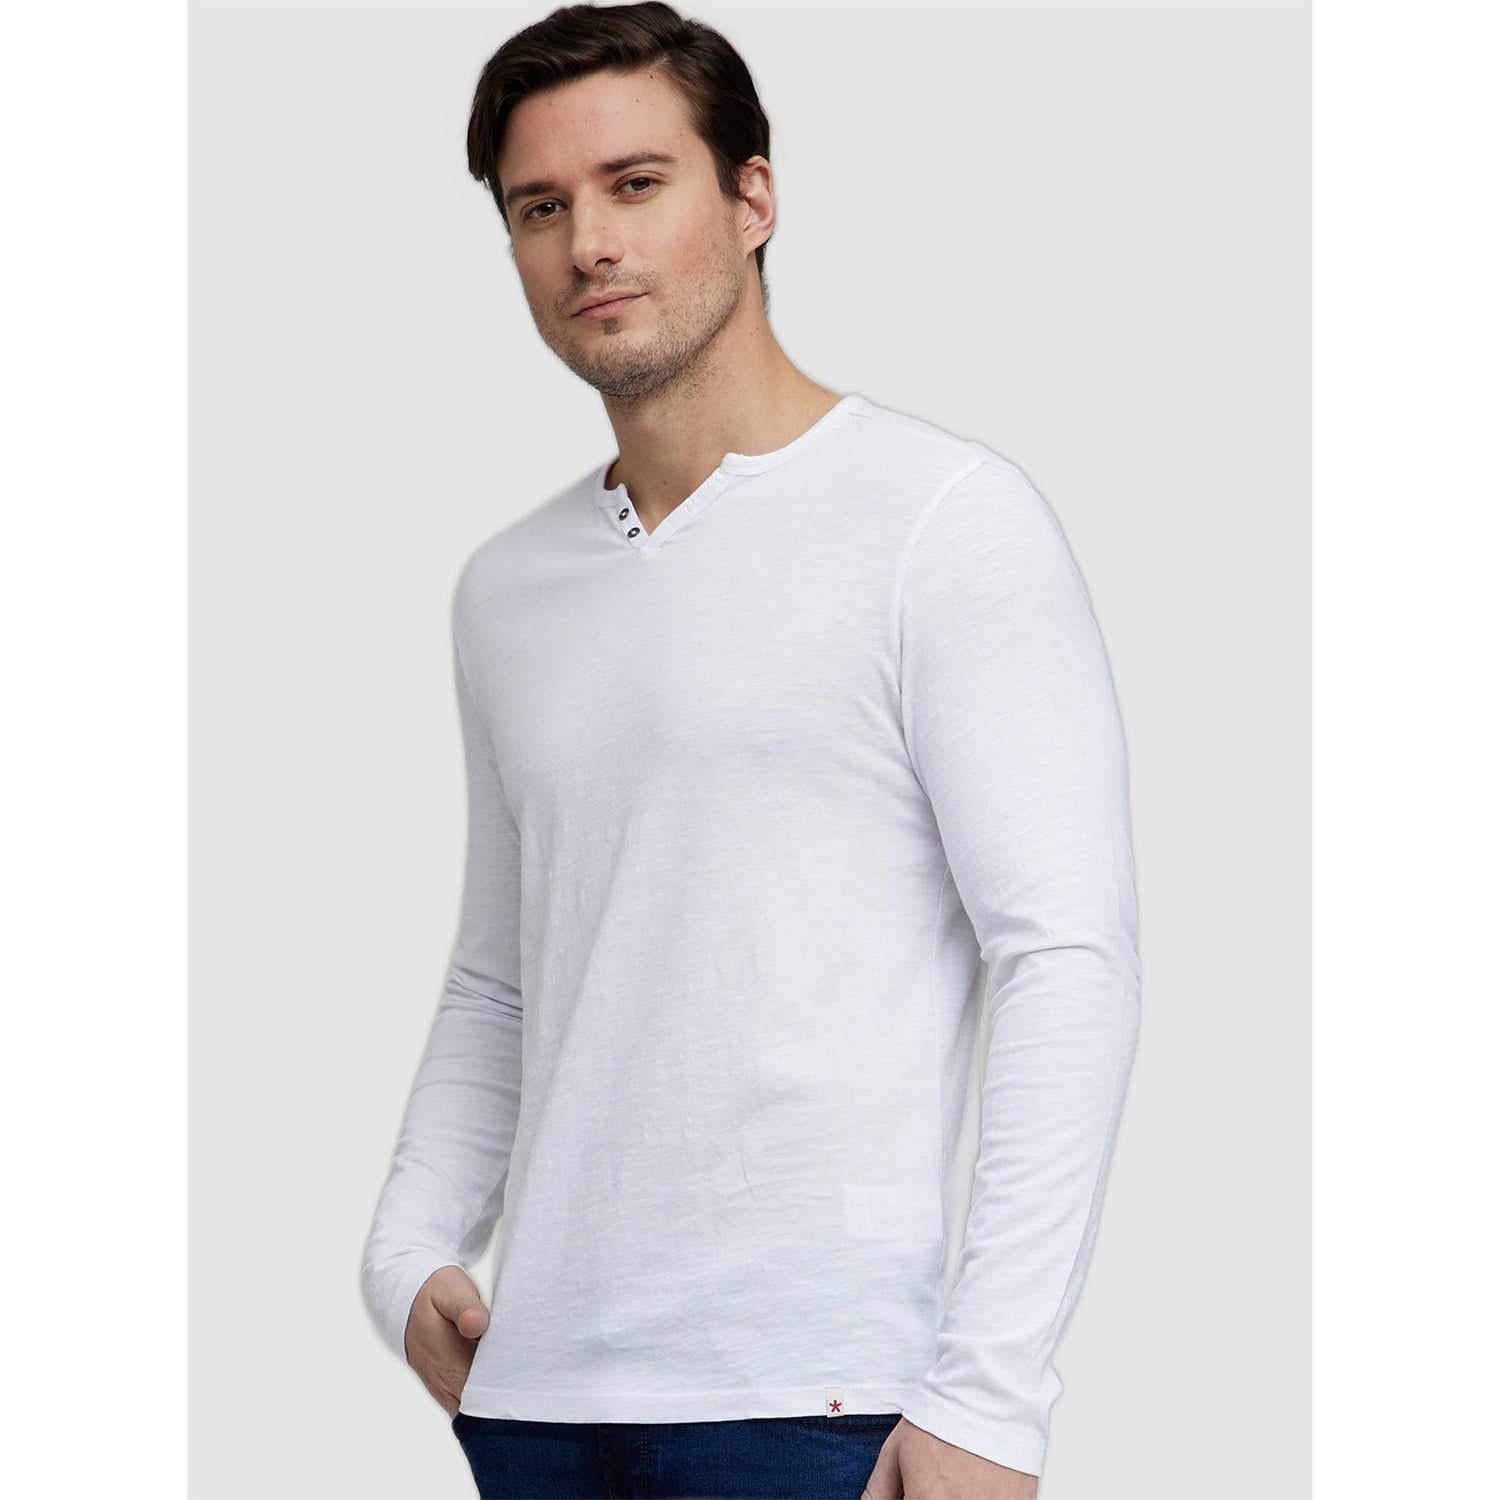 White Henley Neck Cotton T-shirt (ECABELONG2)